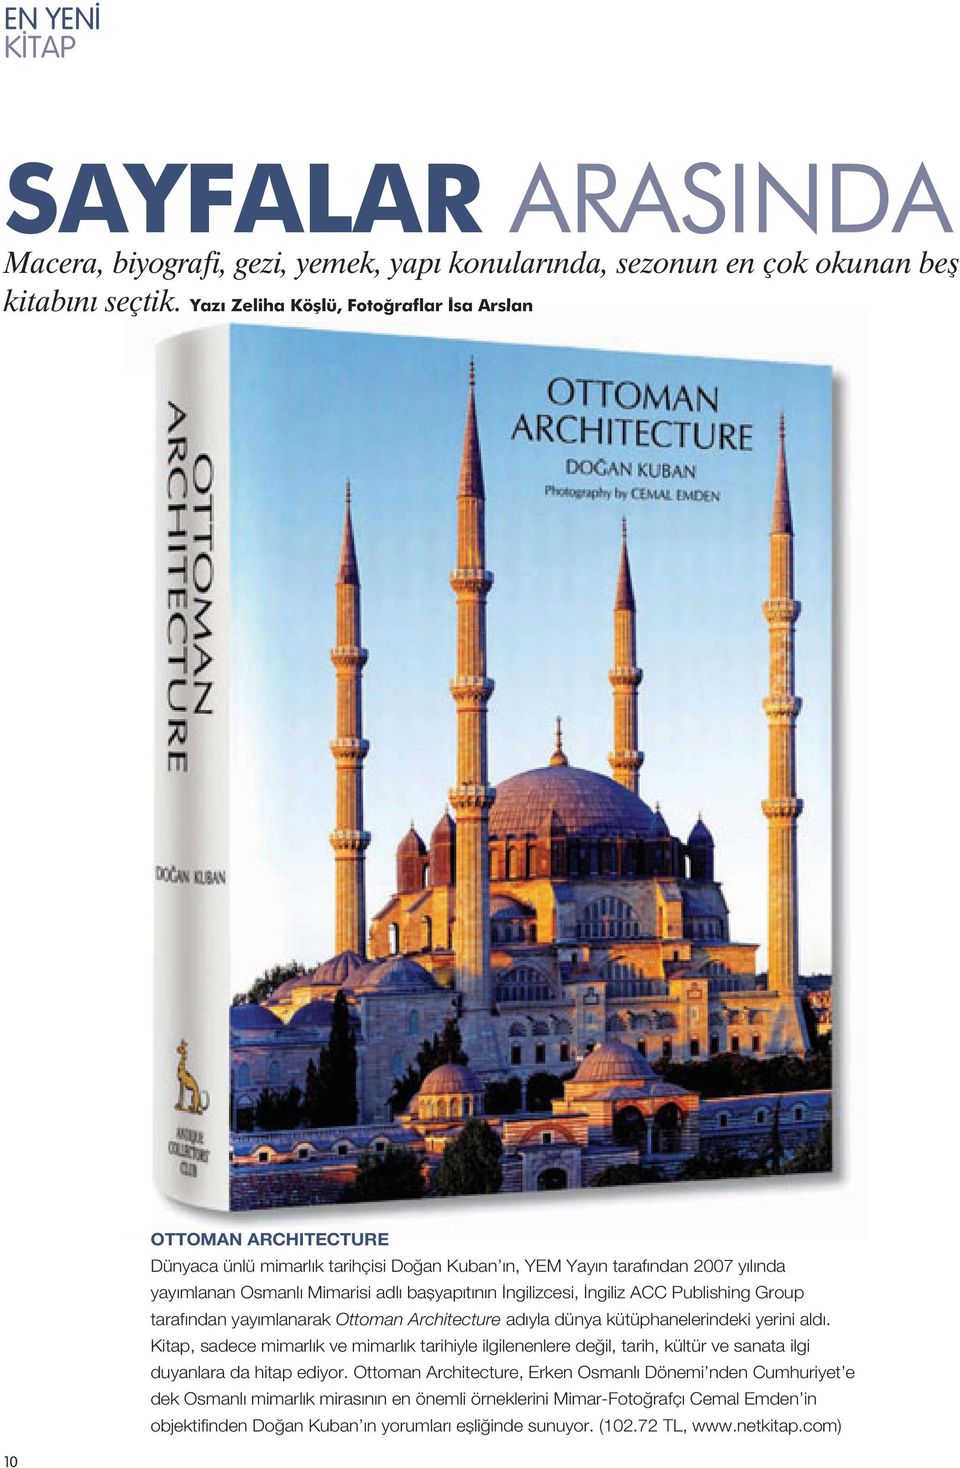 İngilizcesi, İngiliz ACC Publishing Group tarafından yayımlanarak Ottoman Architecture adıyla dünya kütüphanelerindeki yerini aldı.